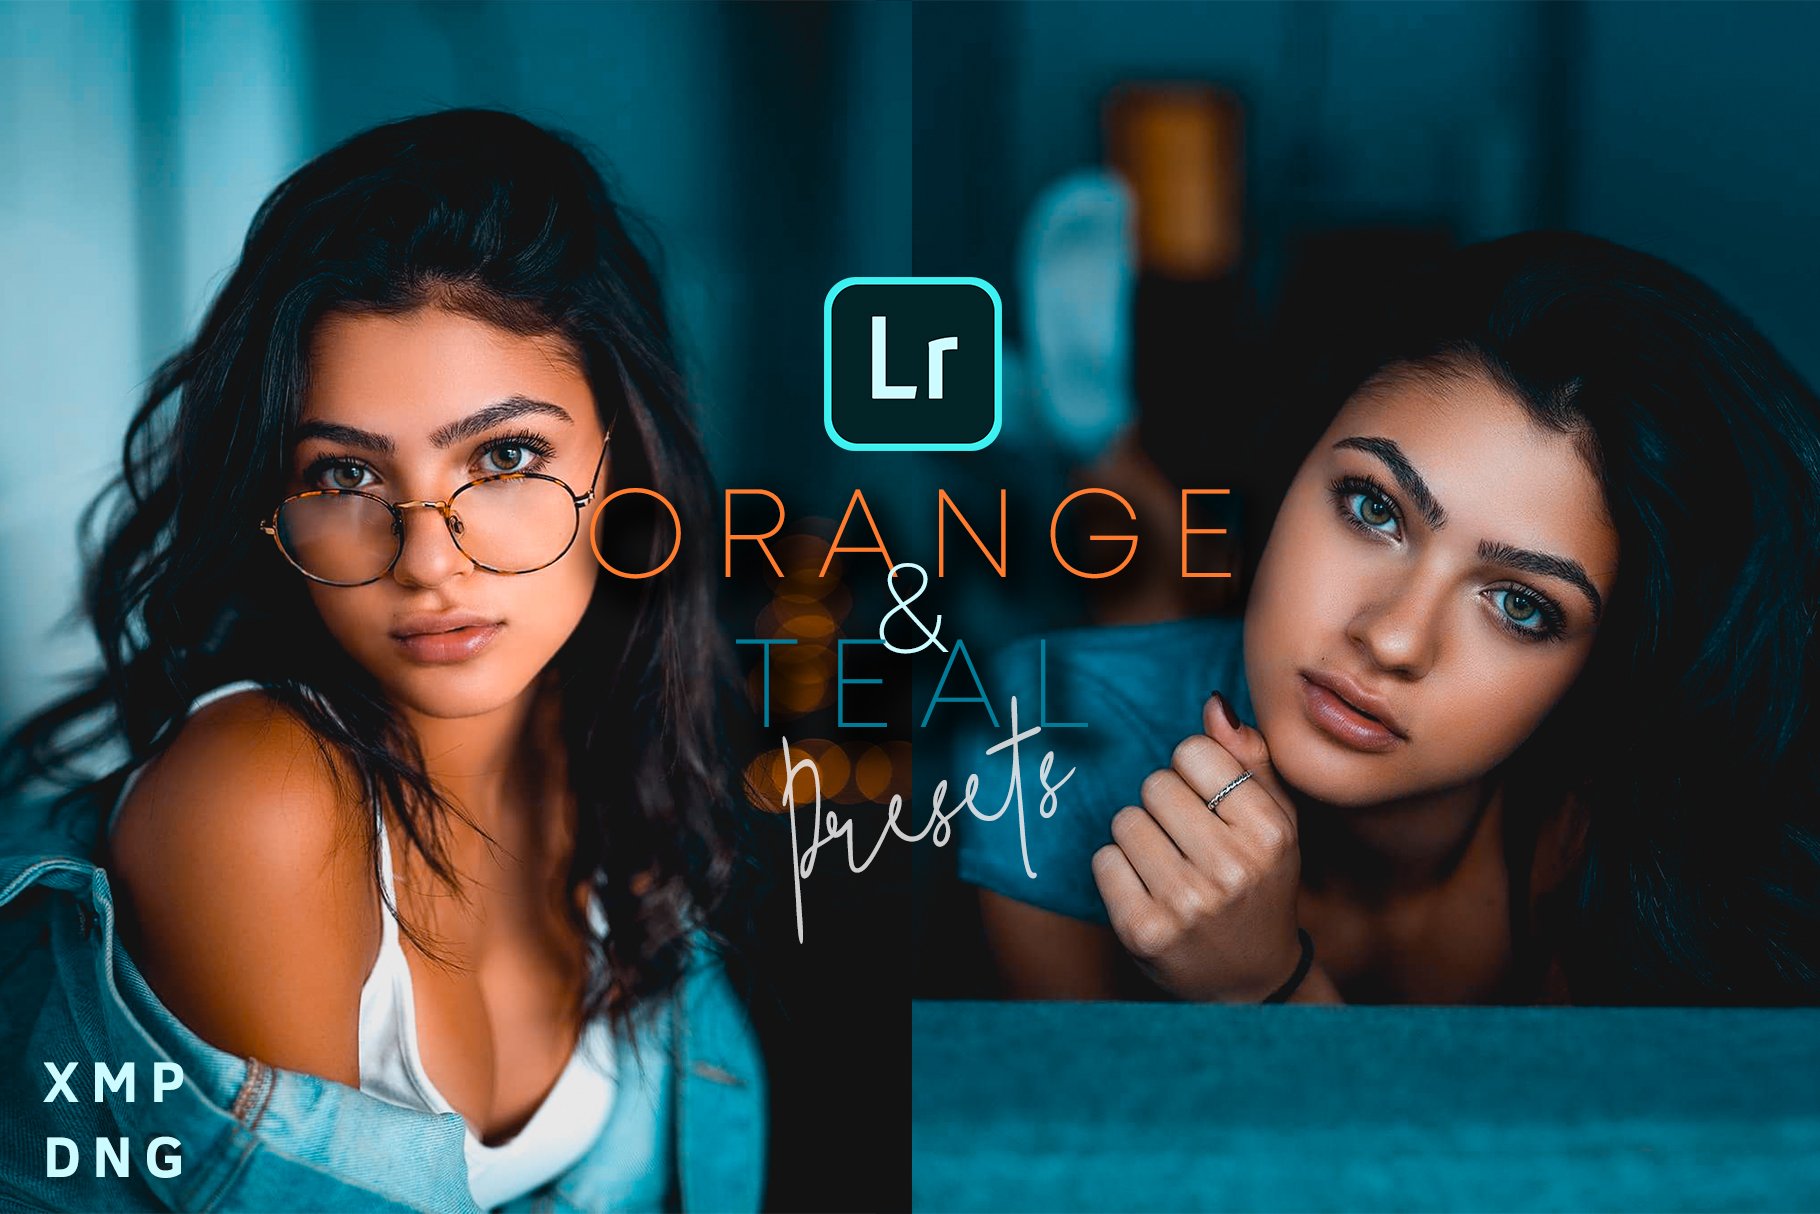 Orange & Teal Lightroom Presetscover image.